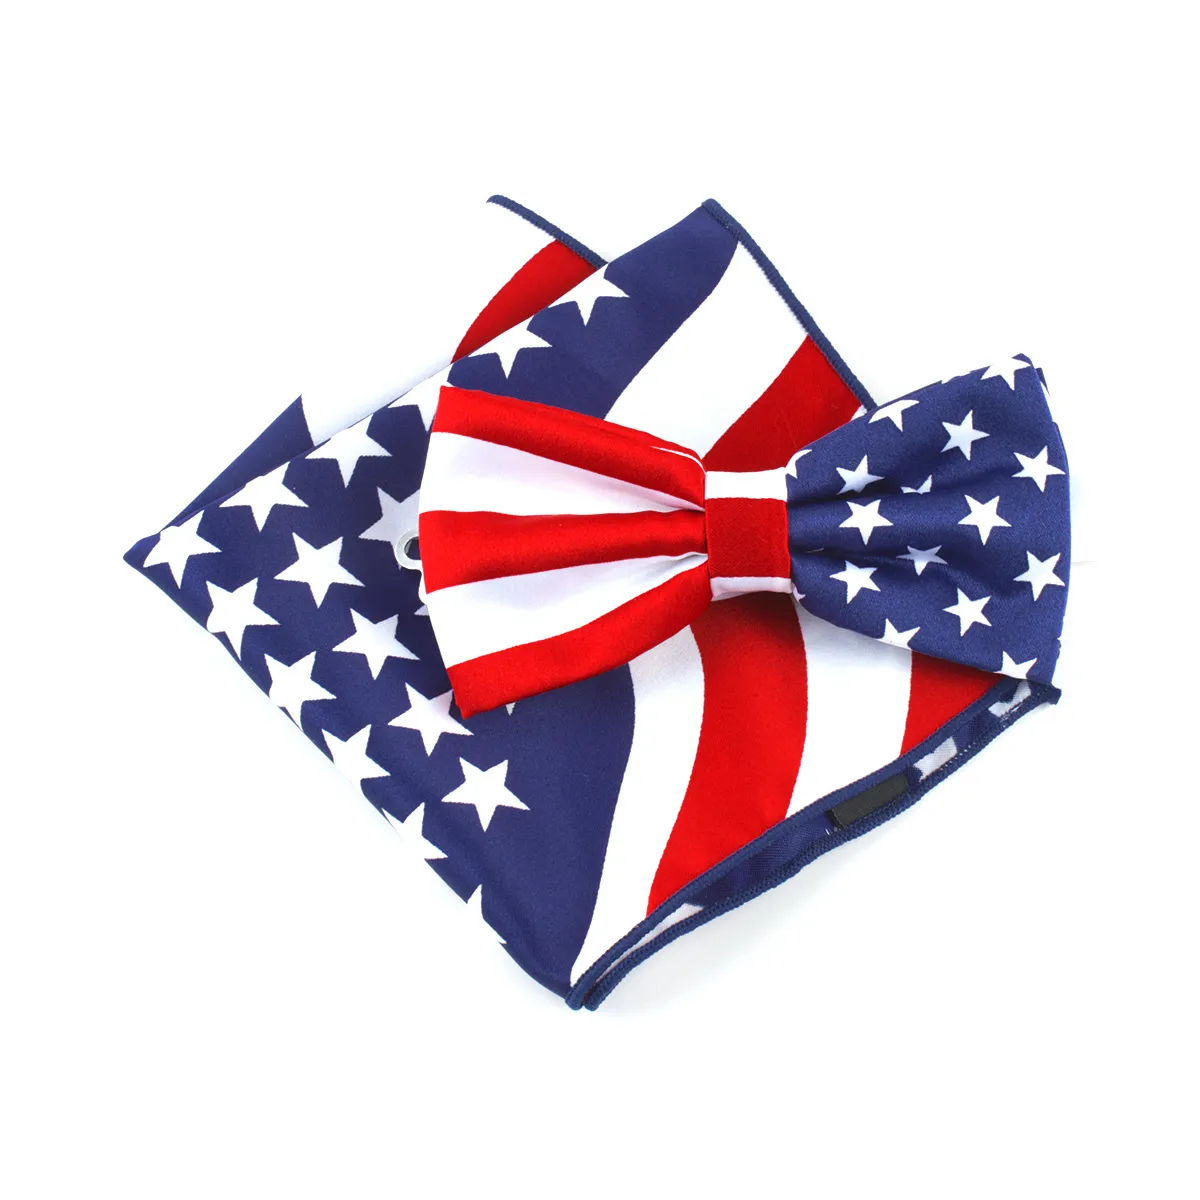 American Flag Patriotic 7 월 4 일 휴일 넥타이 또는 나비 넥타이 미국 국기 보우 티 세트 또는 넥타이 세트 326n